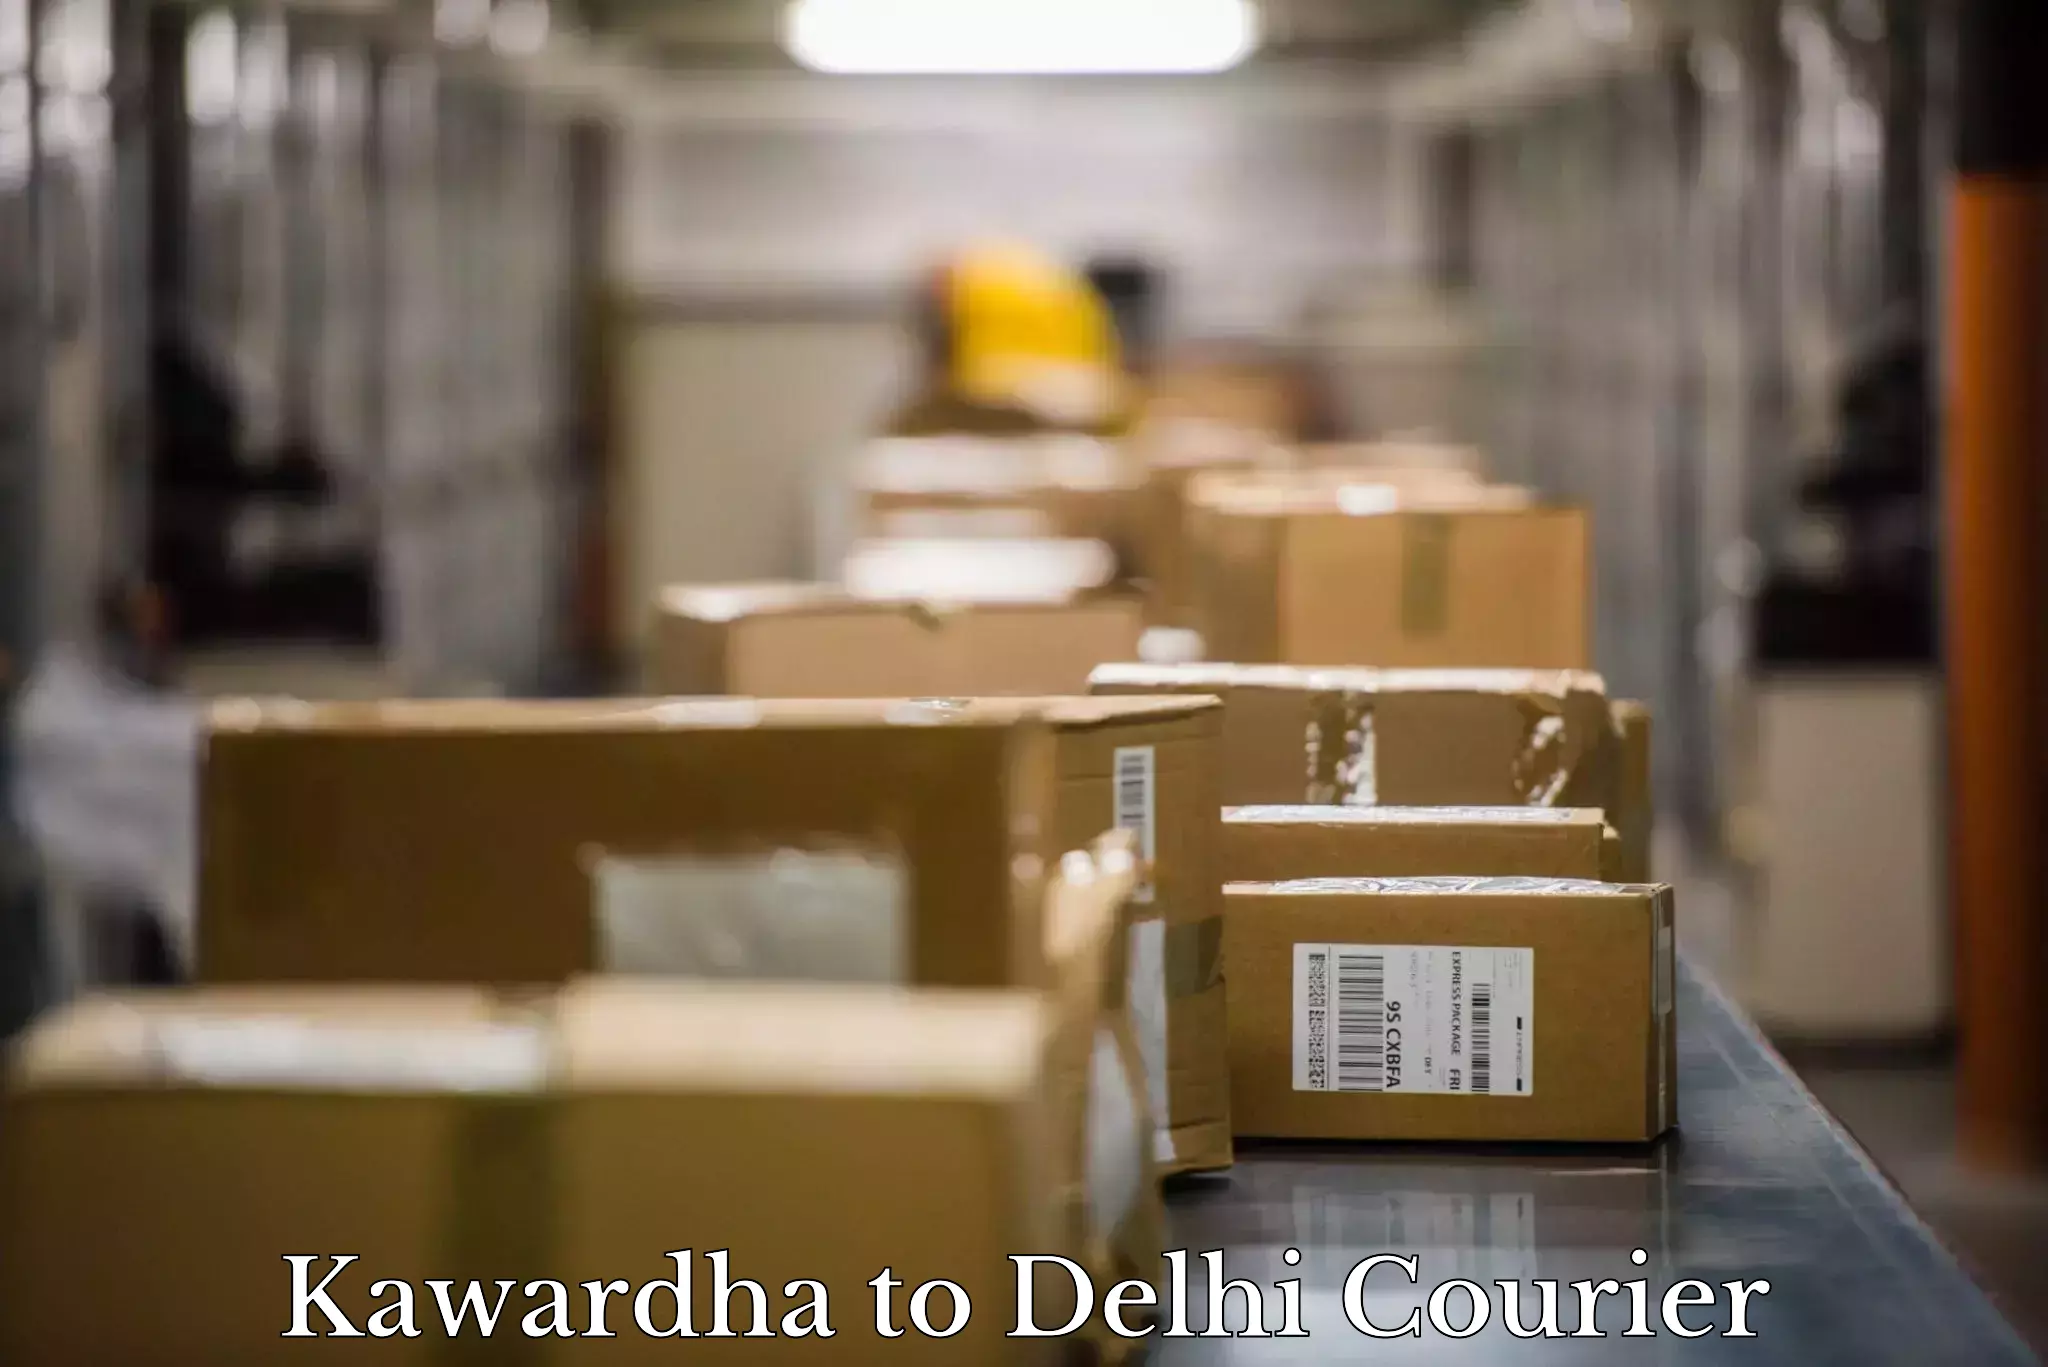 Quality moving services Kawardha to Delhi